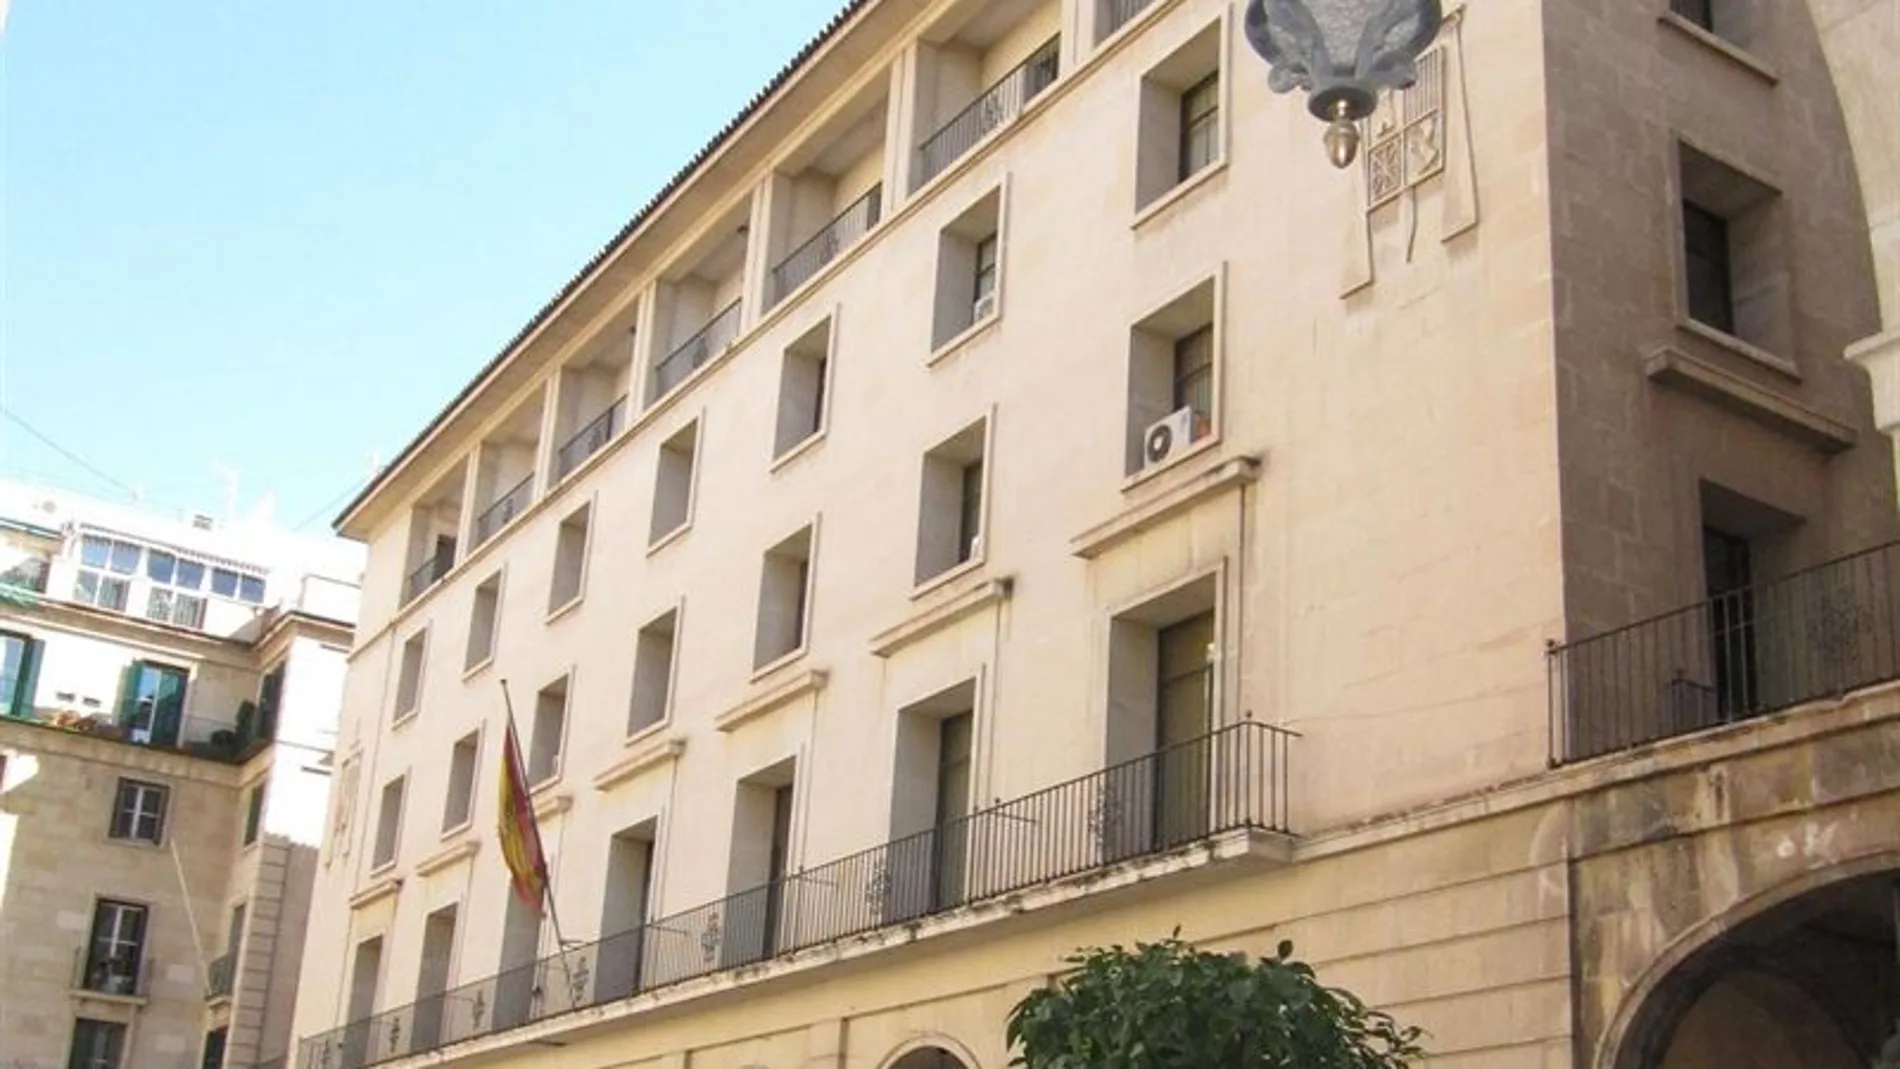 Audiencia provincial de Alicante